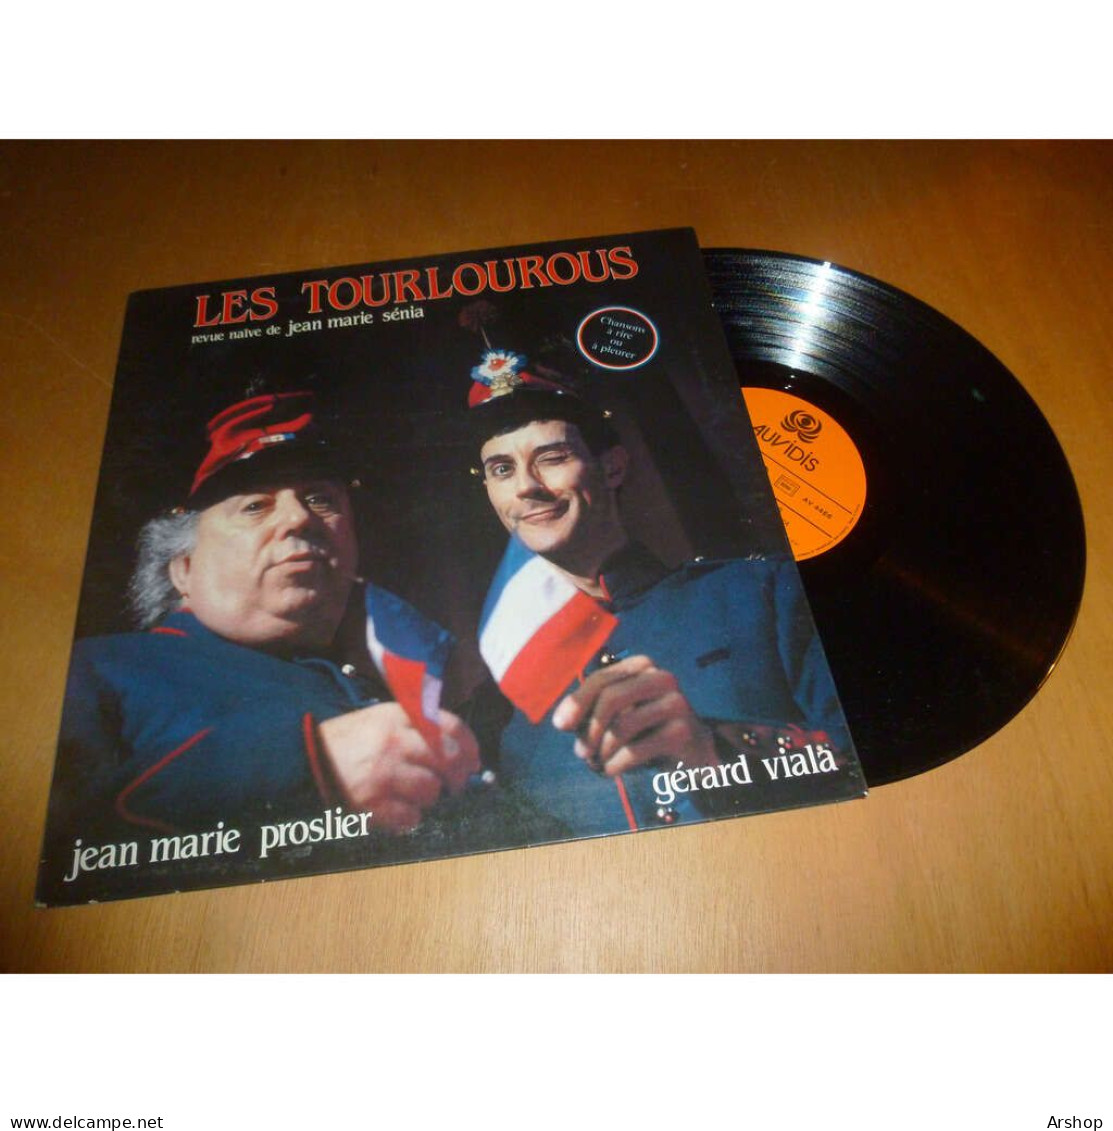 JEAN MARIE PROSLIER & GERARD VIALA Les Trourlourous - Revue Naïve De Jean Marie Senia AUVIDIS Lp 1985 - Sonstige - Franz. Chansons